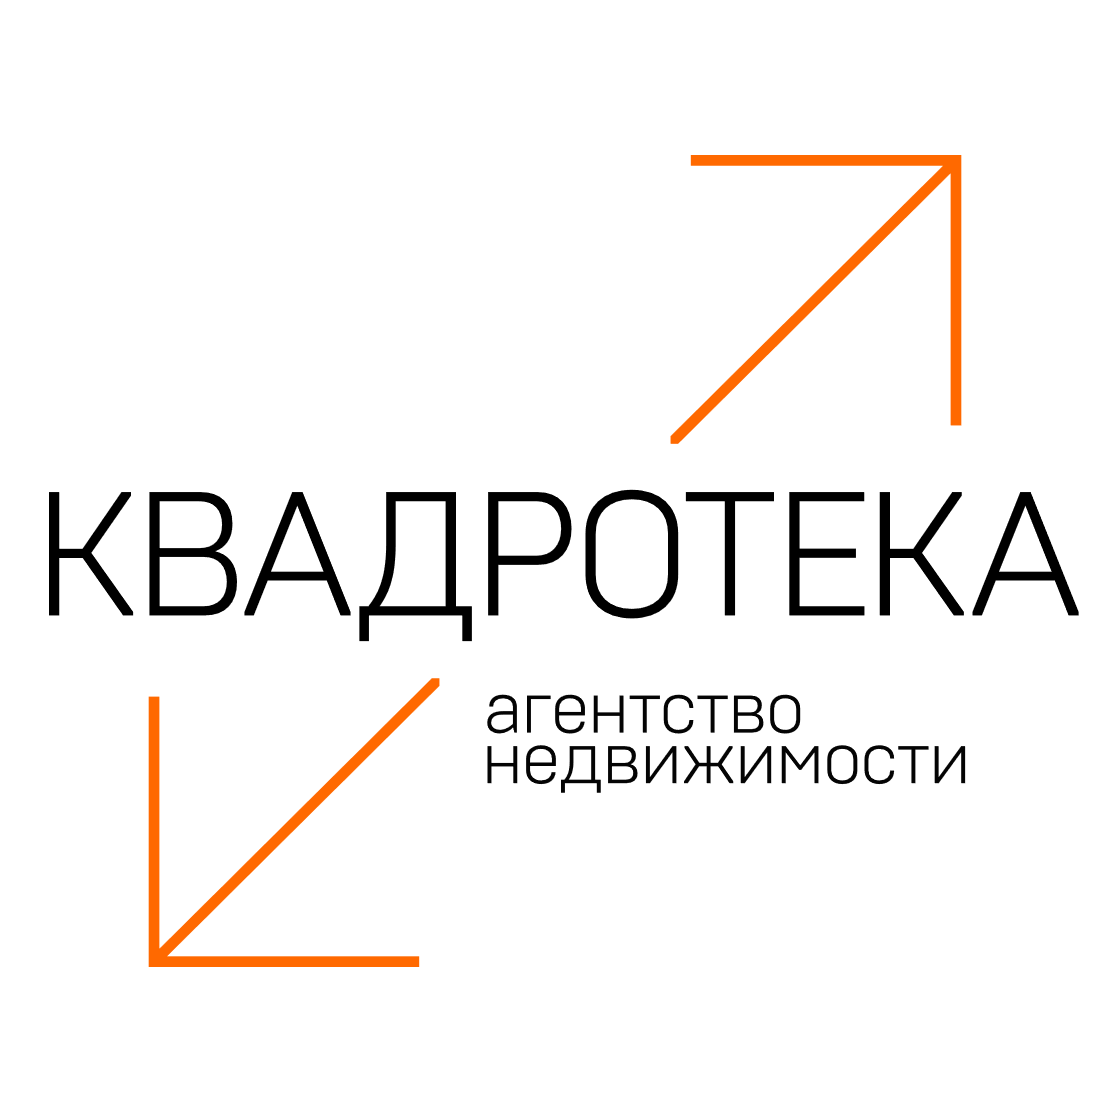 Фото / логотип АН Квадротека на проспекте Димитрова 7, Новосибирск